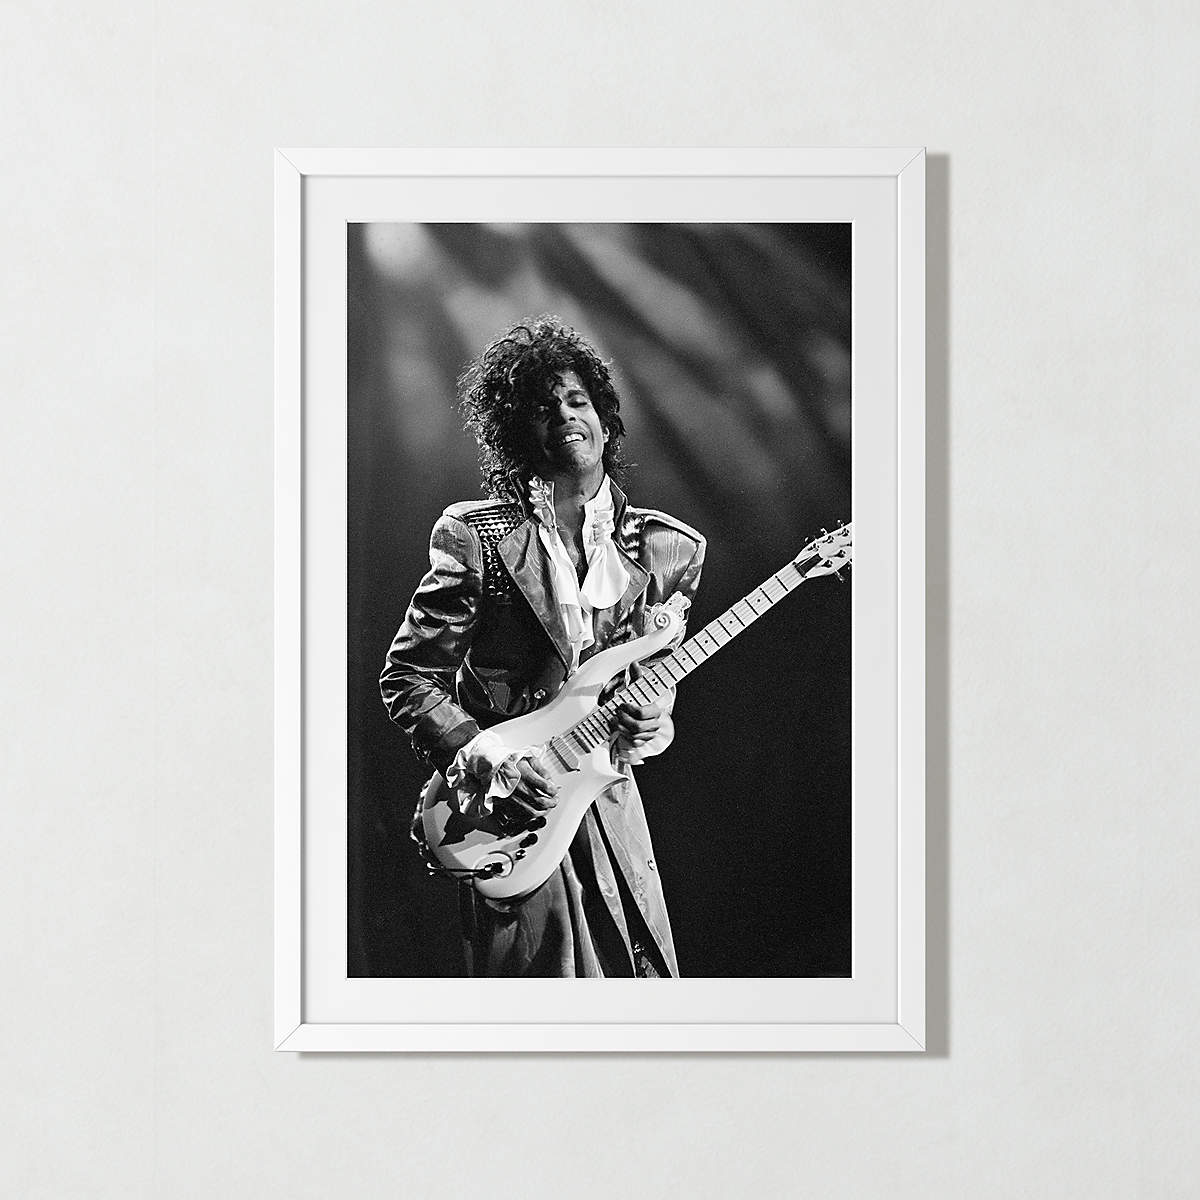 'Prince In Chicago' Framed Black & White Art Print 39.5